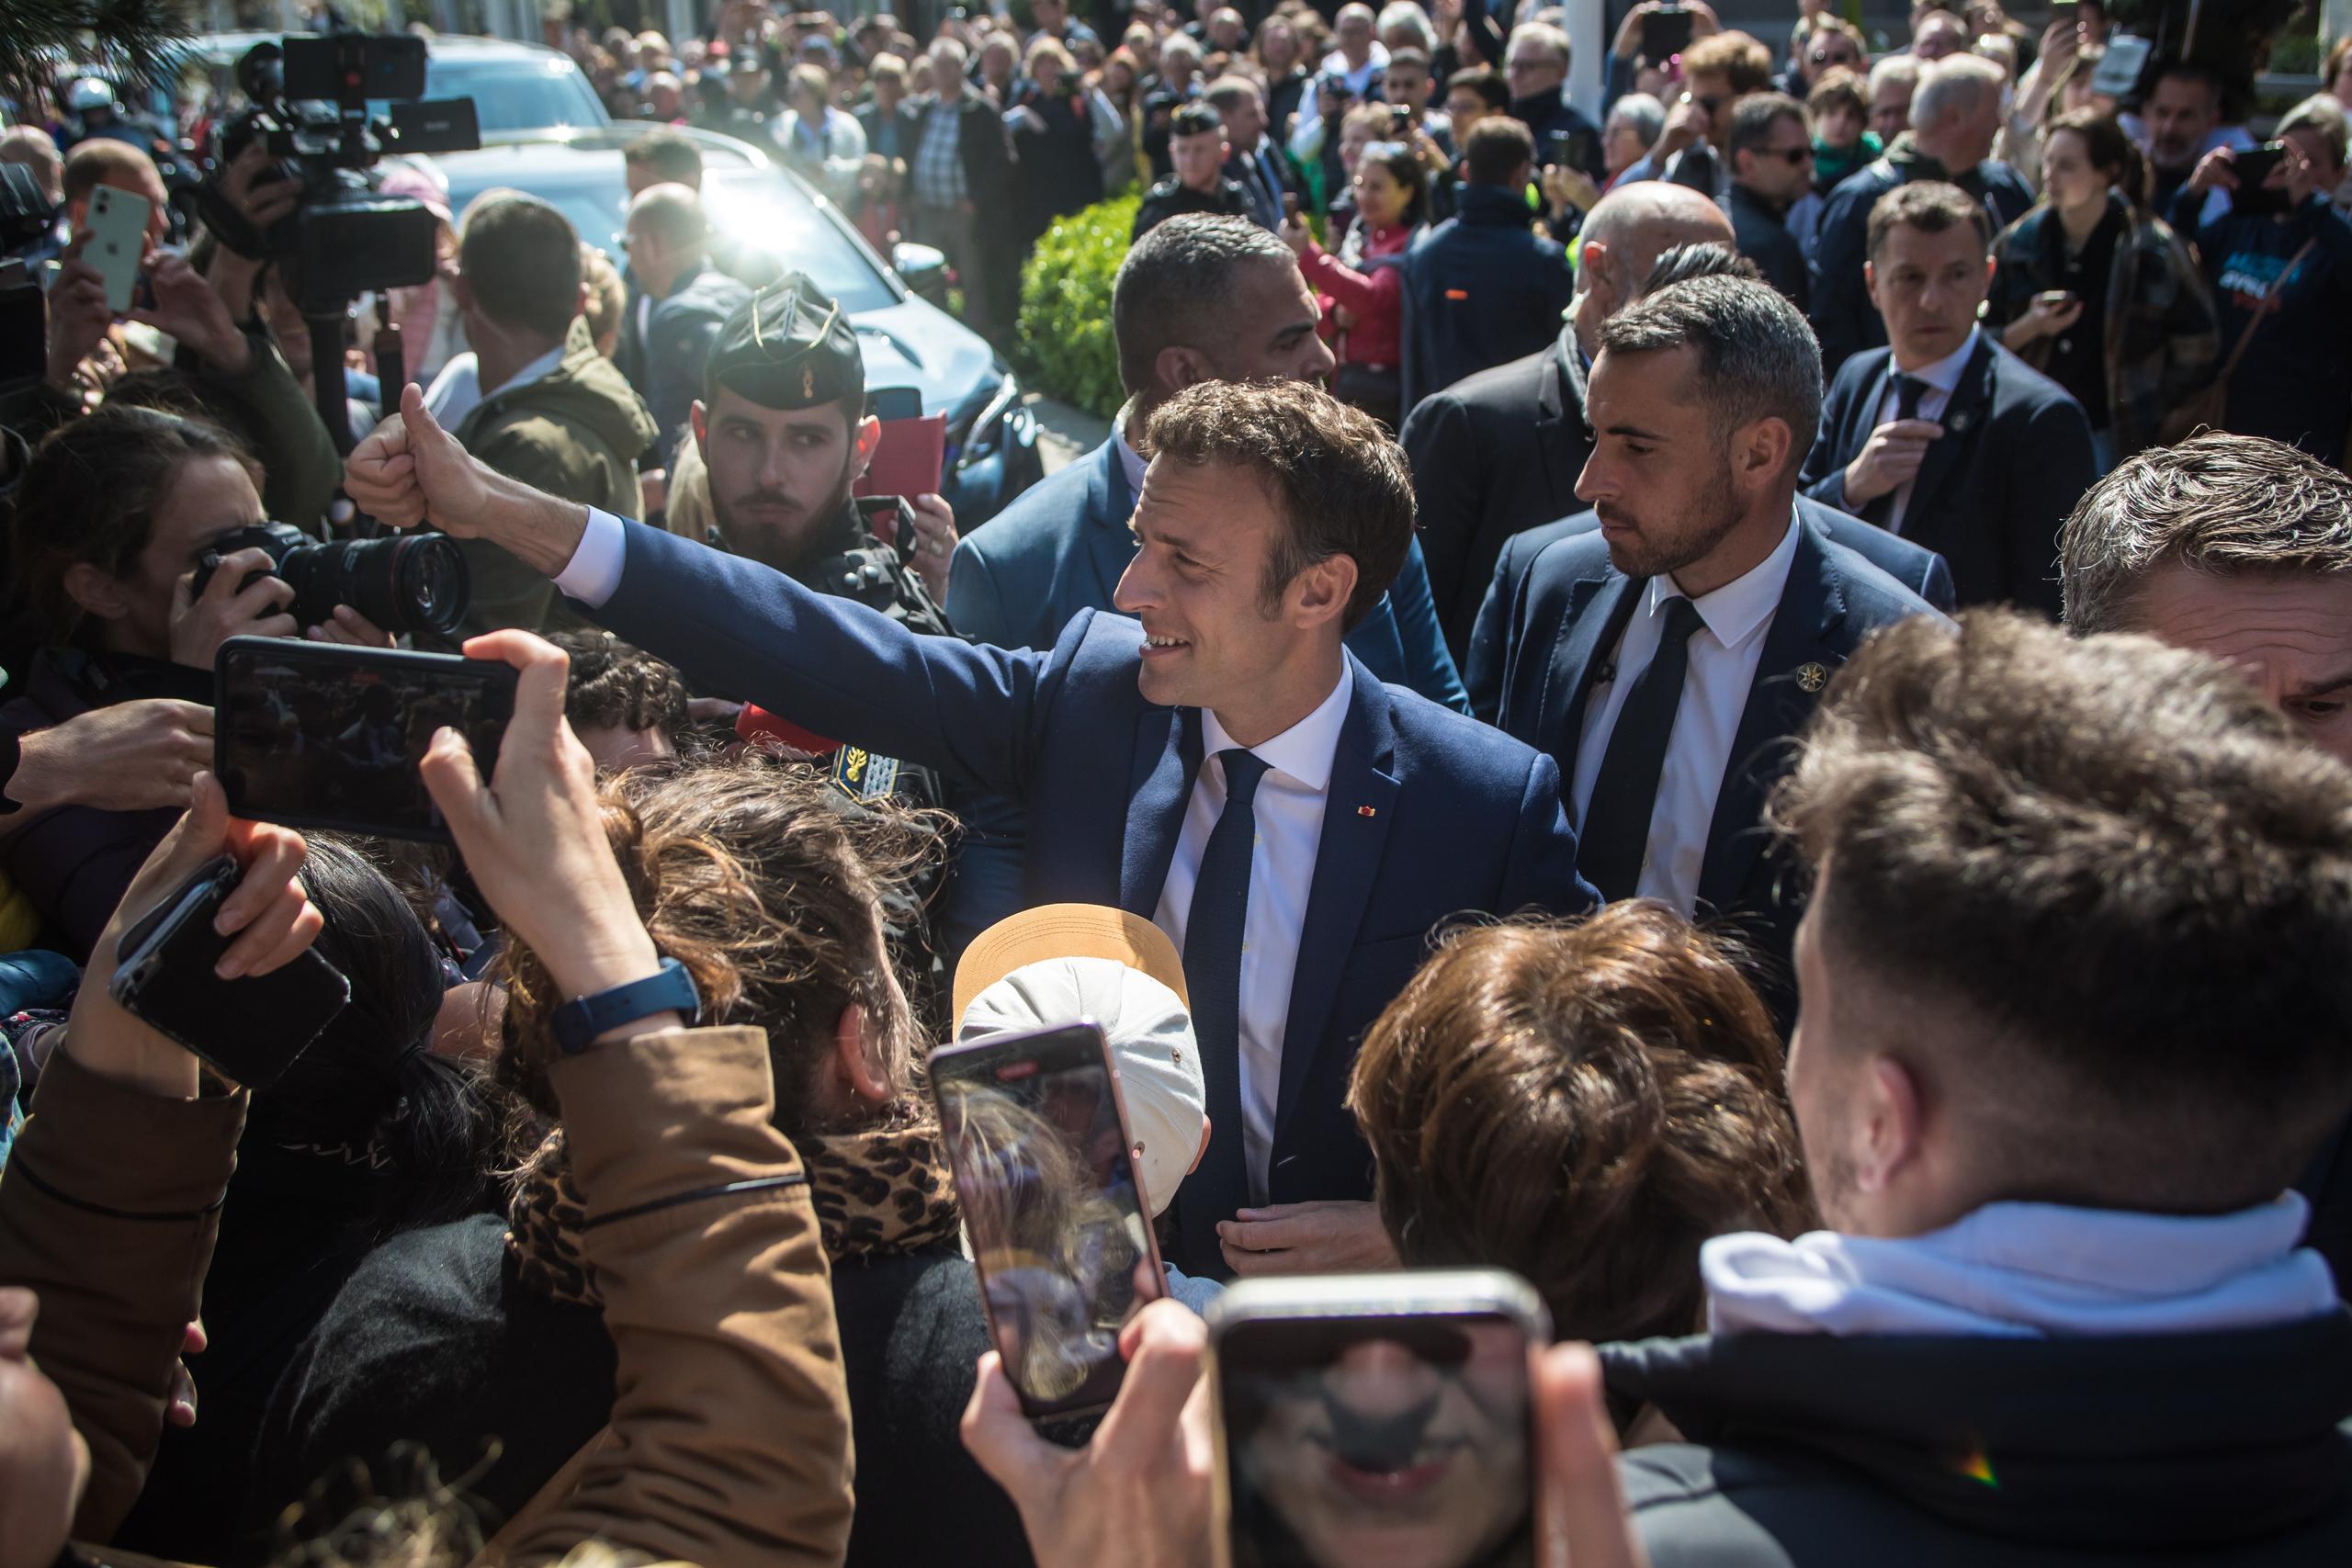 El presidente francés y candidato a la reelección Emmanuel Macron saluda a la gente antes de acudir al colegio electoral en la segunda vuelta de las elecciones presidenciales francesas, en Le Touquet, Francia. (EFE/EPA/Christophe Petit Tesson)